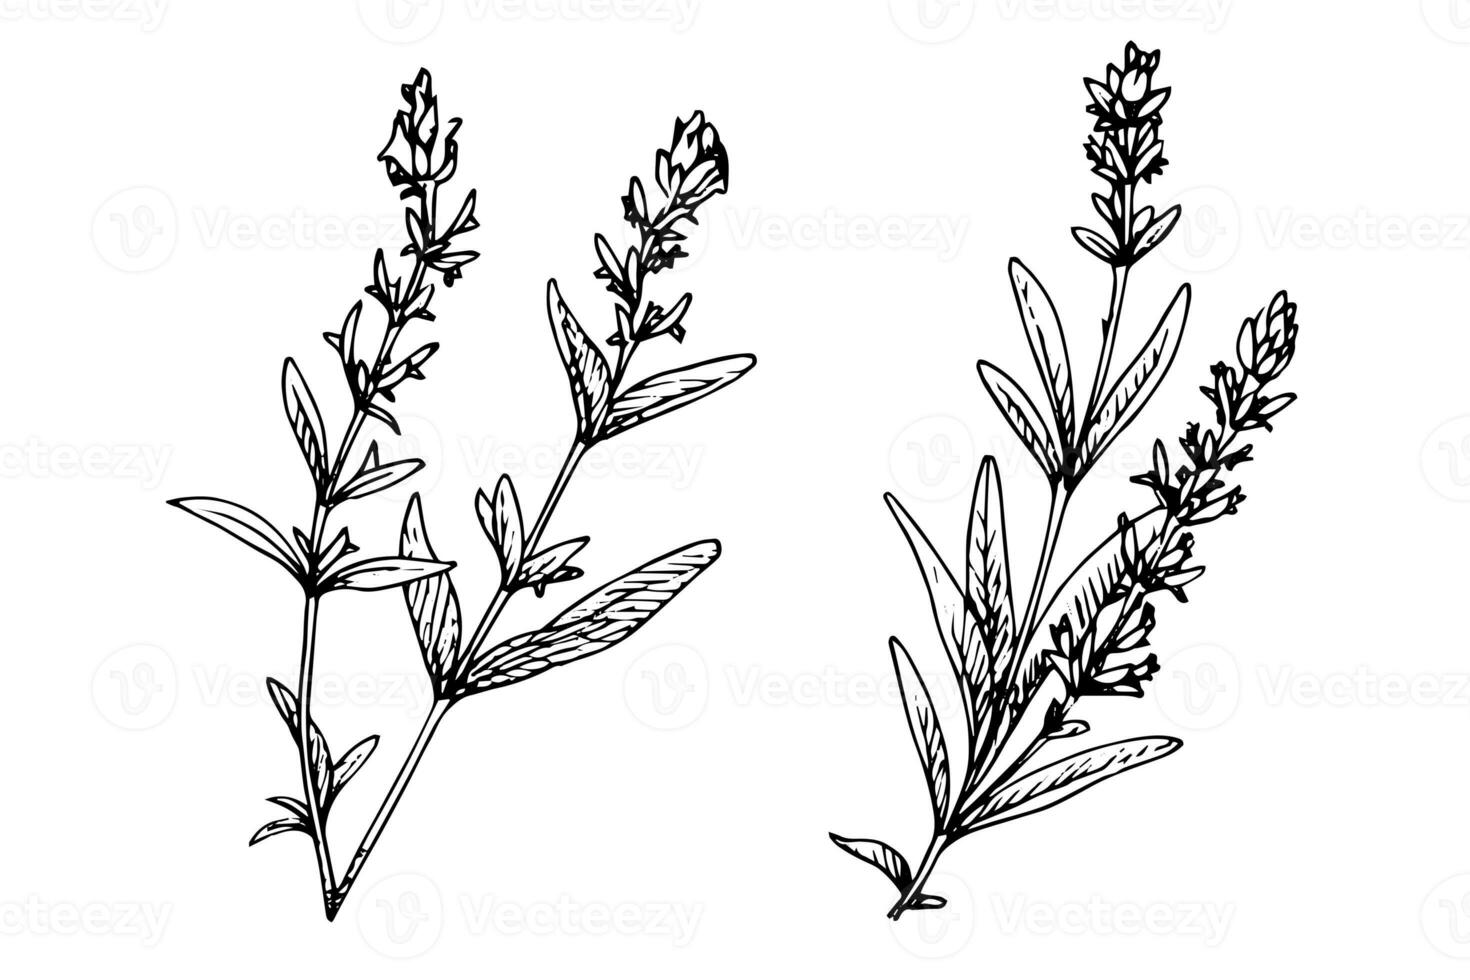 Floral botanical lavender flower hand drawn ink sketch.  Vector engraving illustration. photo